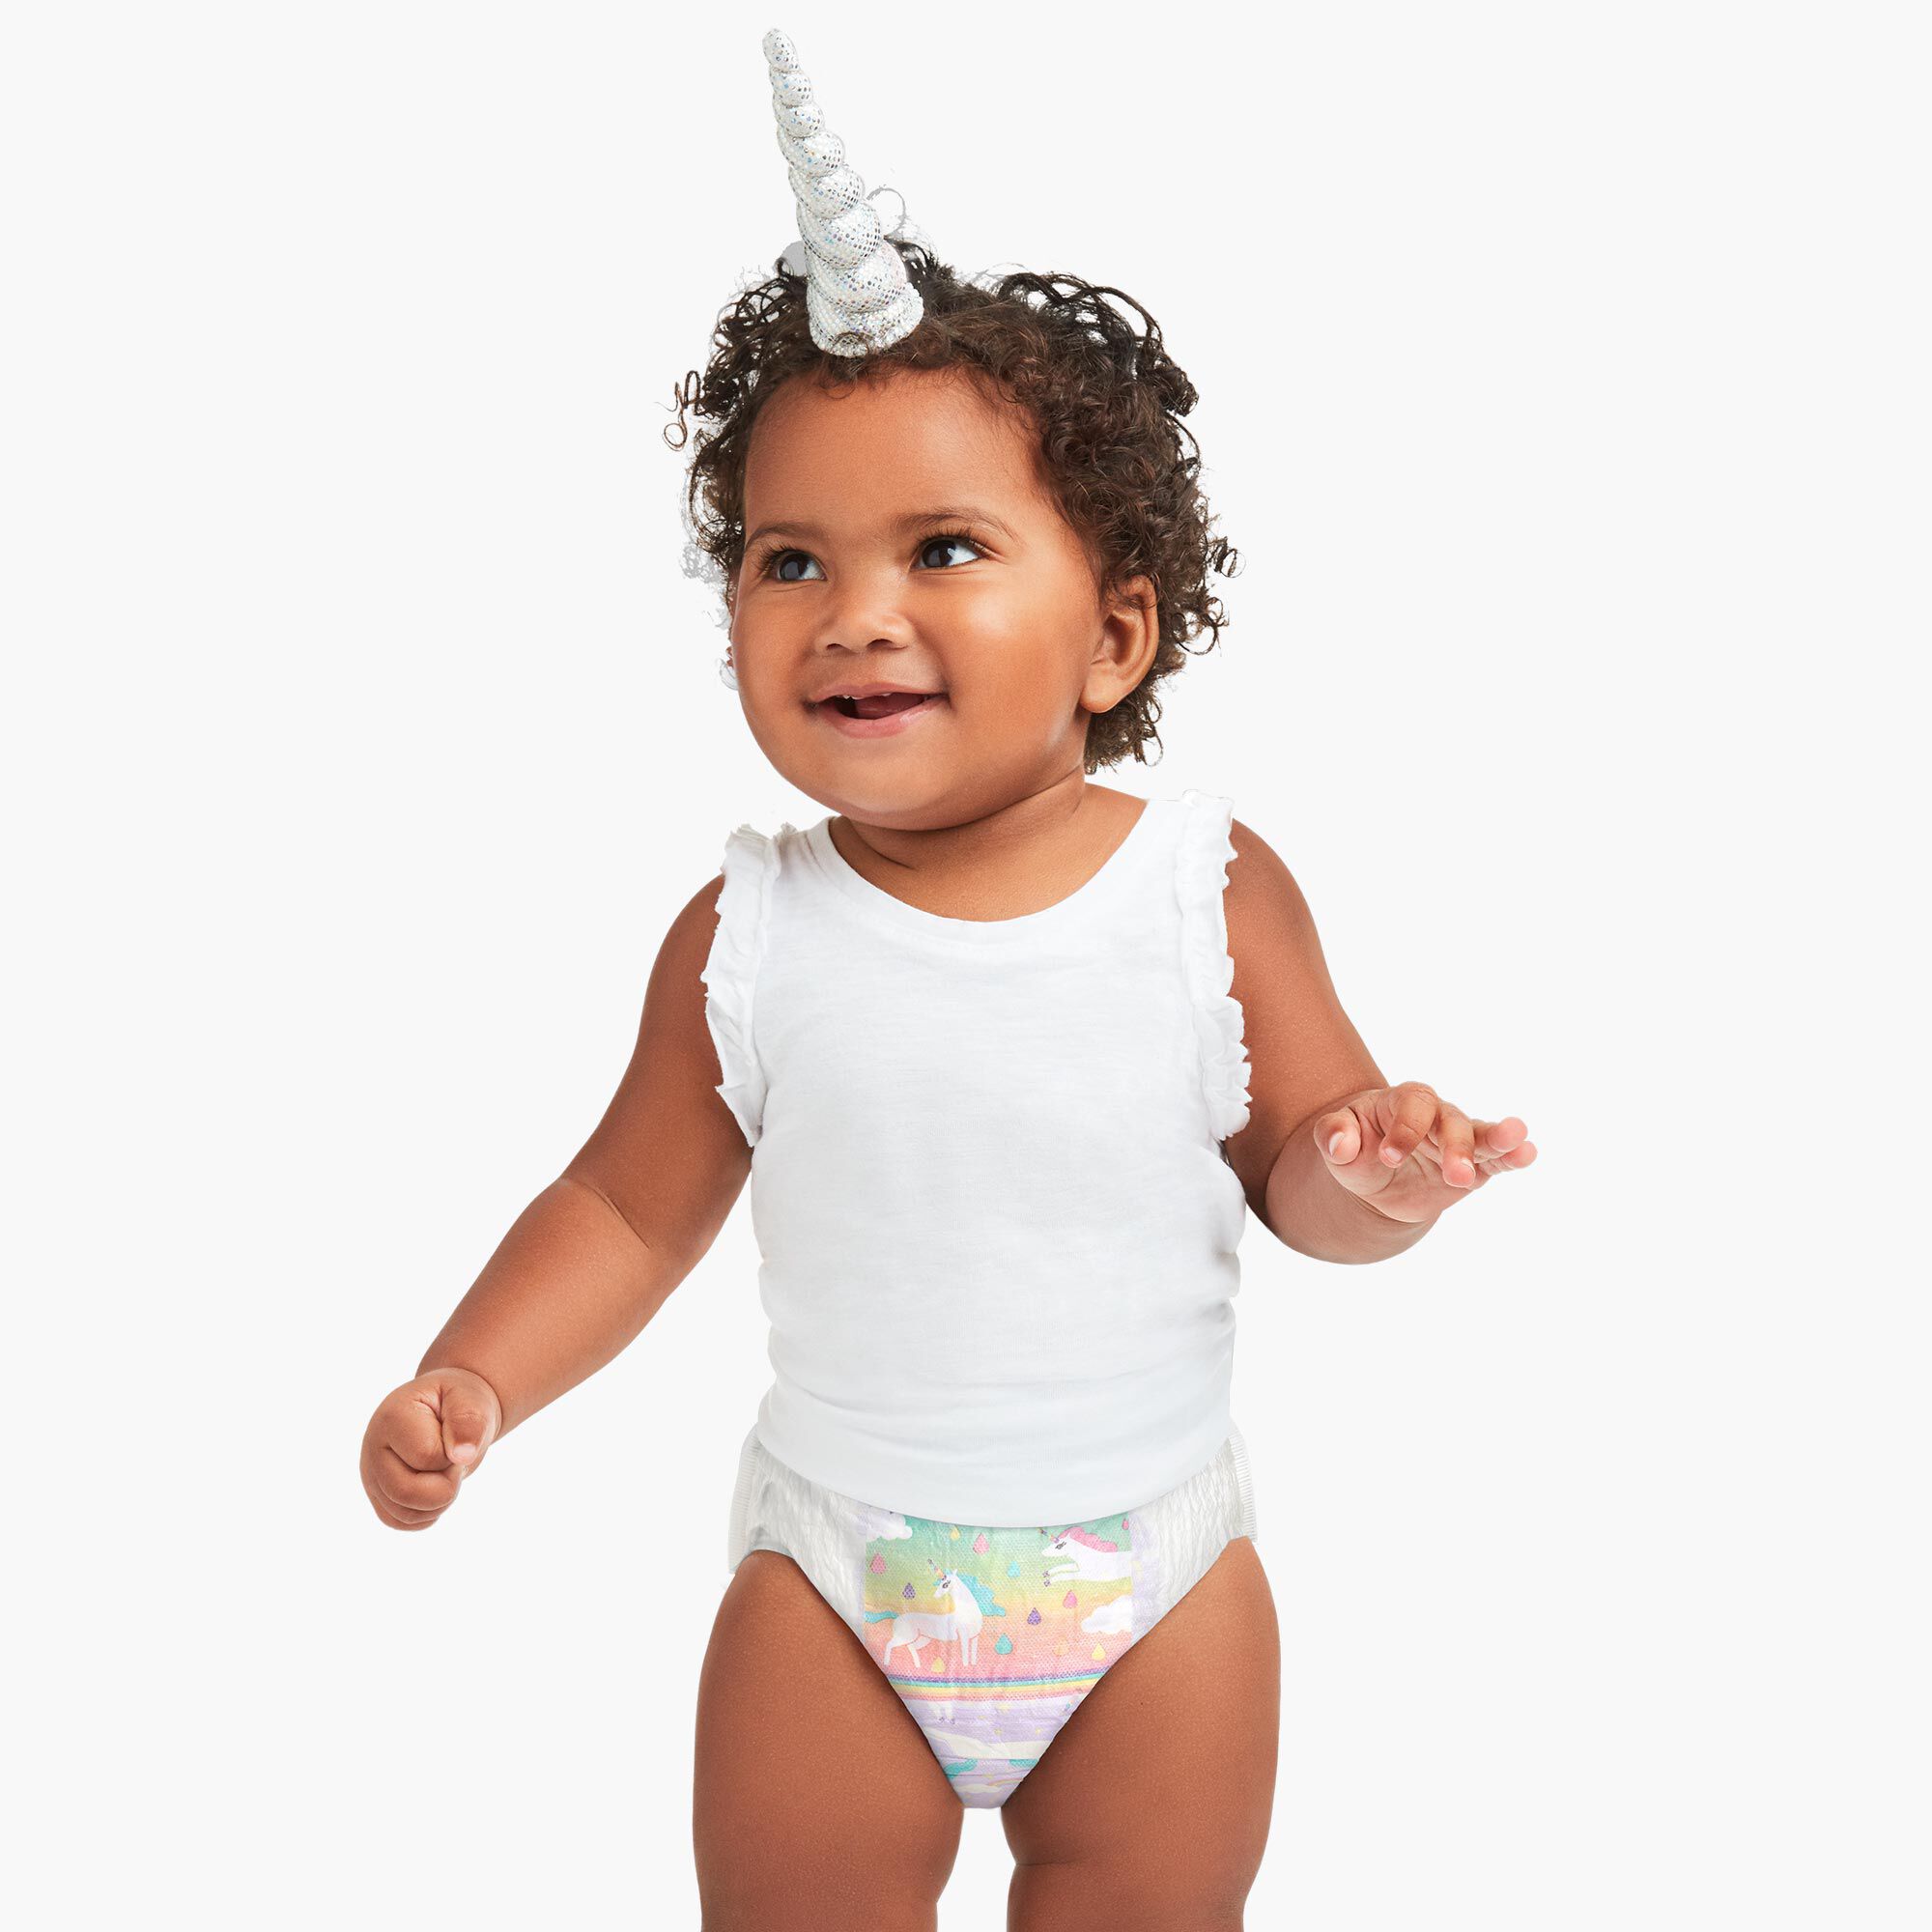 honest company unicorn diapers